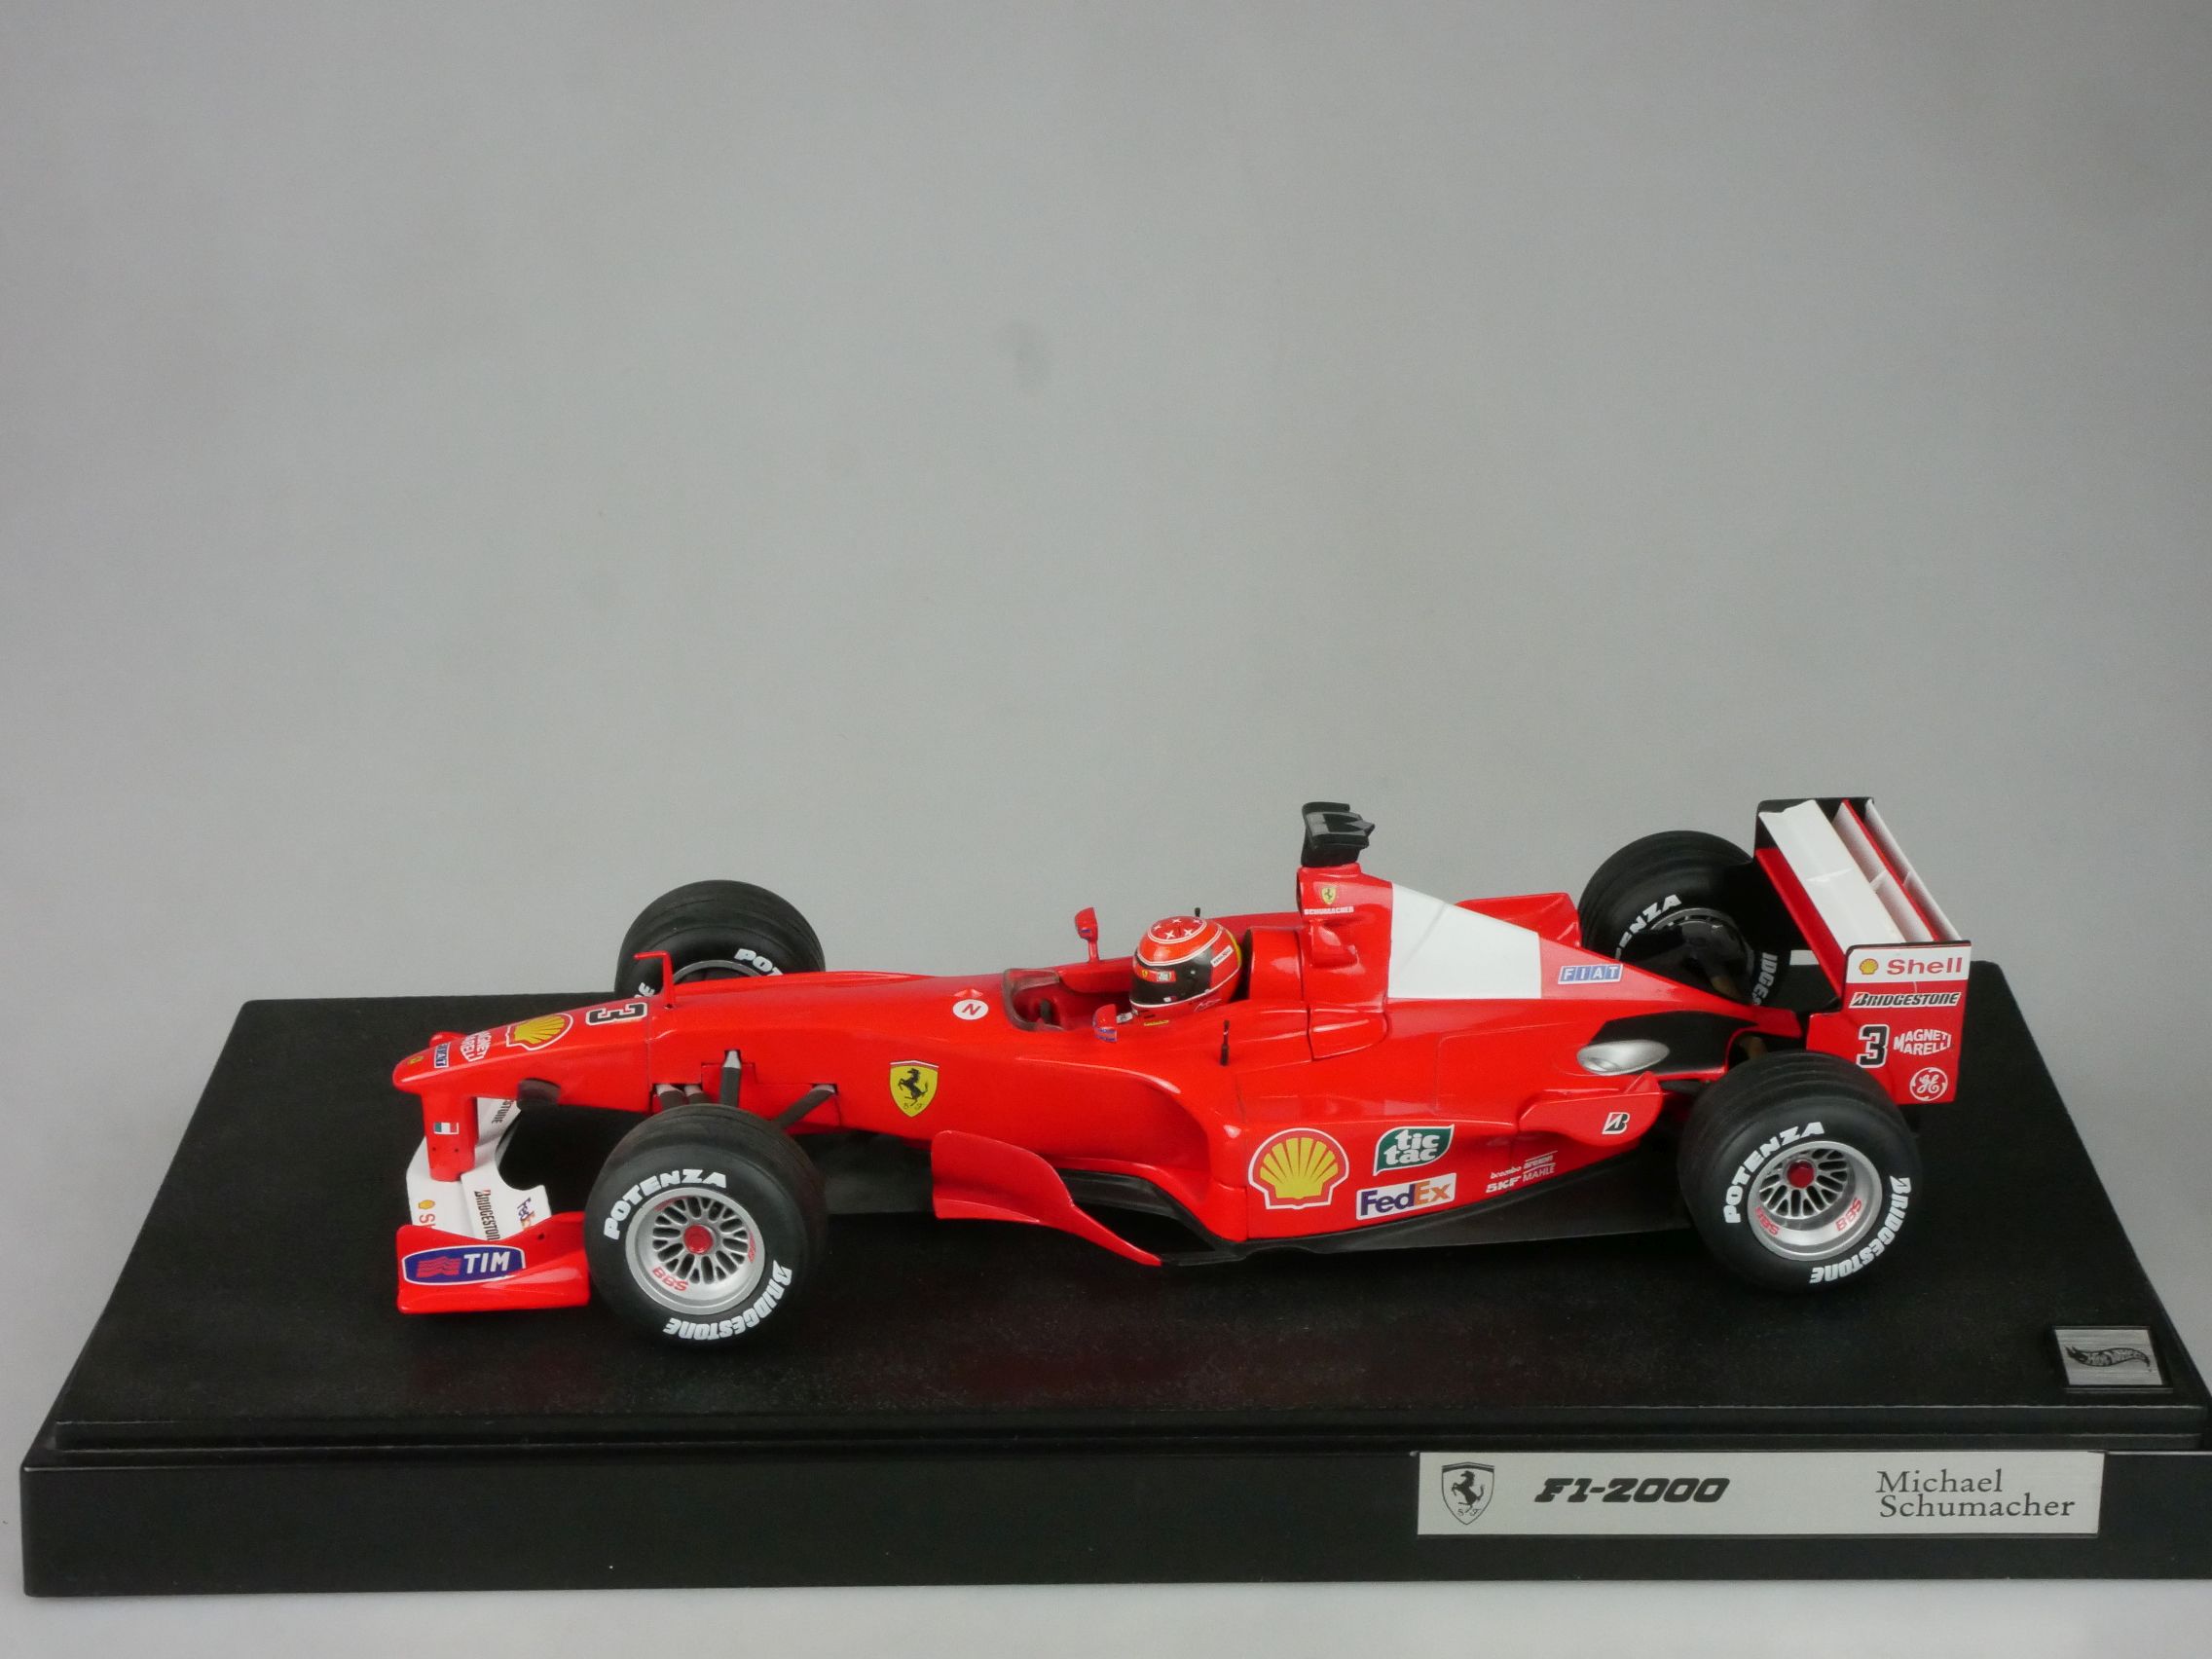 Hot Wheels F1 1/18 F1-2000 # 3 M. Schumacher # 26737 Sockel 126745